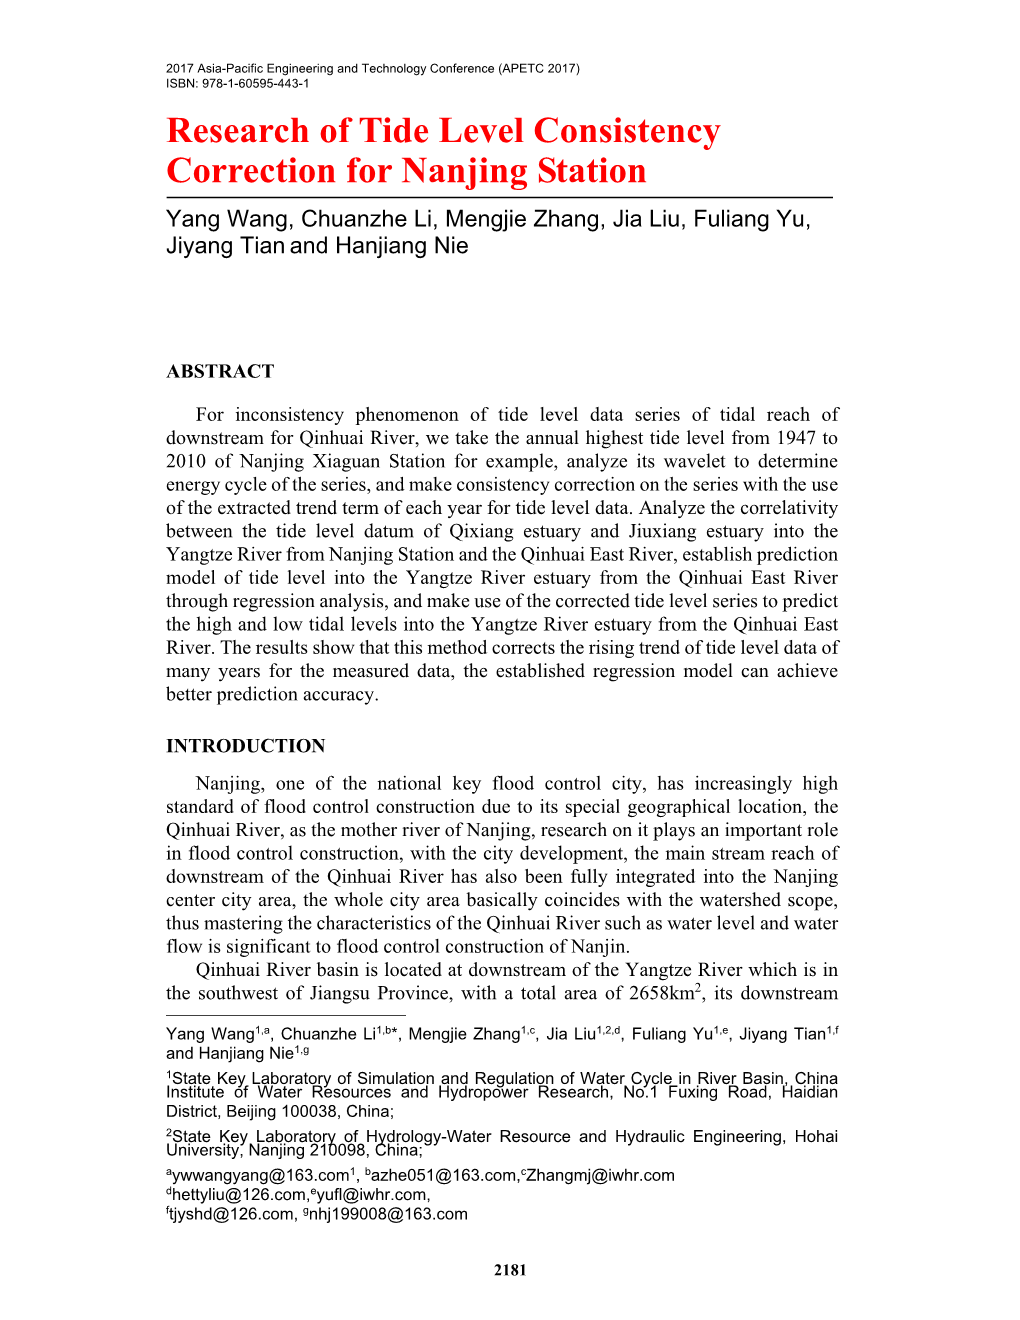 Research of Tide Level Consistency Correction for Nanjing Station Yang Wang, Chuanzhe Li, Mengjie Zhang, Jia Liu, Fuliang Yu, Jiyang Tian and Hanjiang Nie